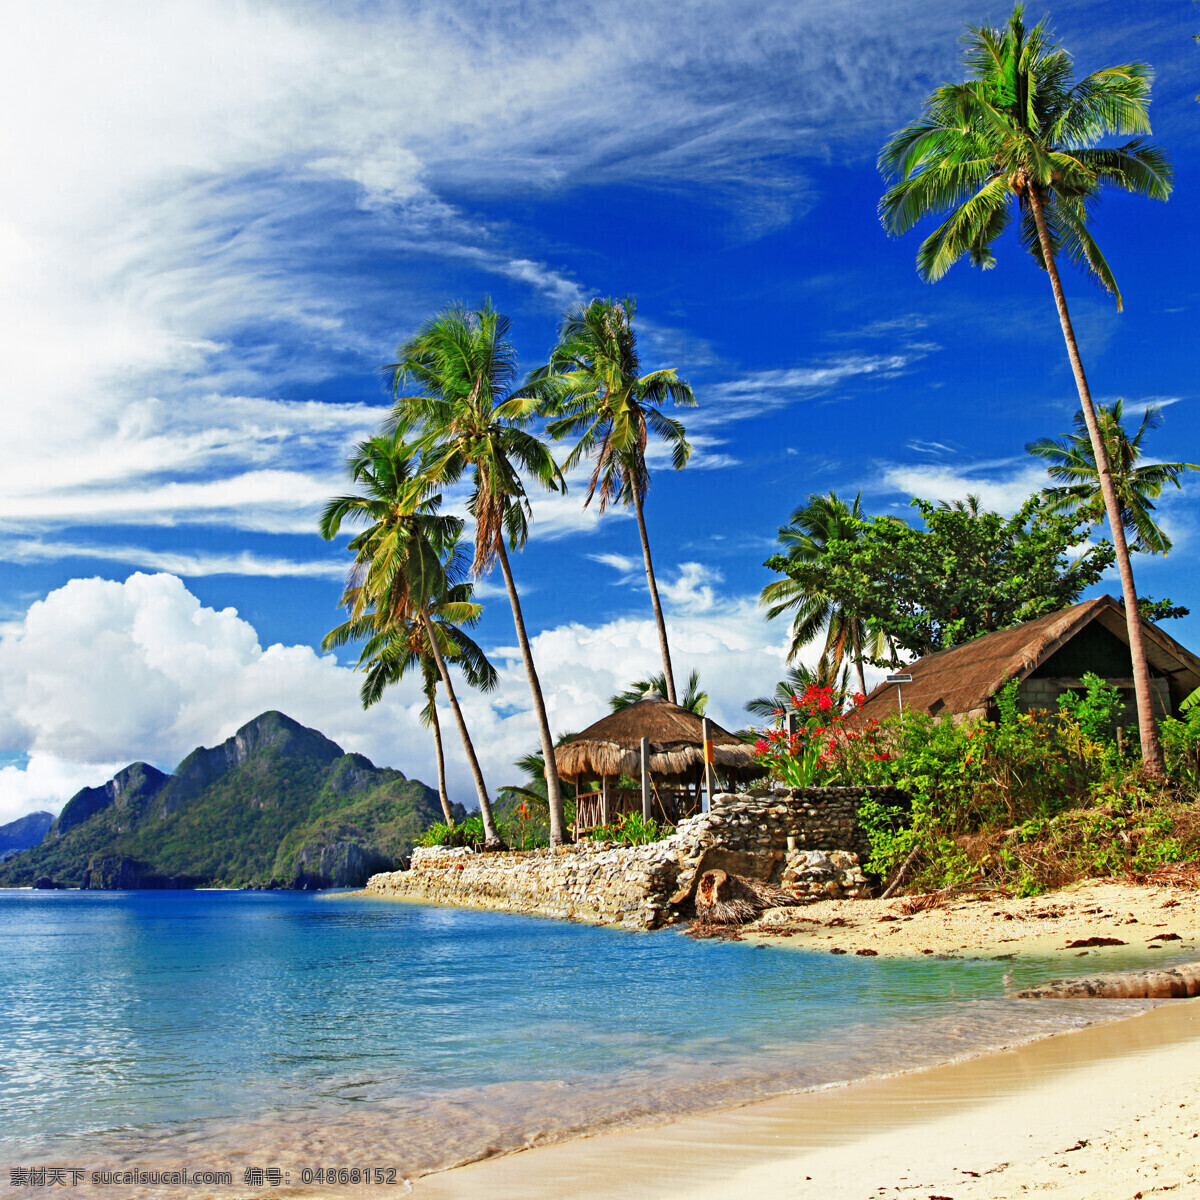 海边 美丽 景色 蓝天 白云 大海 海浪 沙滩 椰树 植物 高山 房子 自然风景 自然景观 蓝色